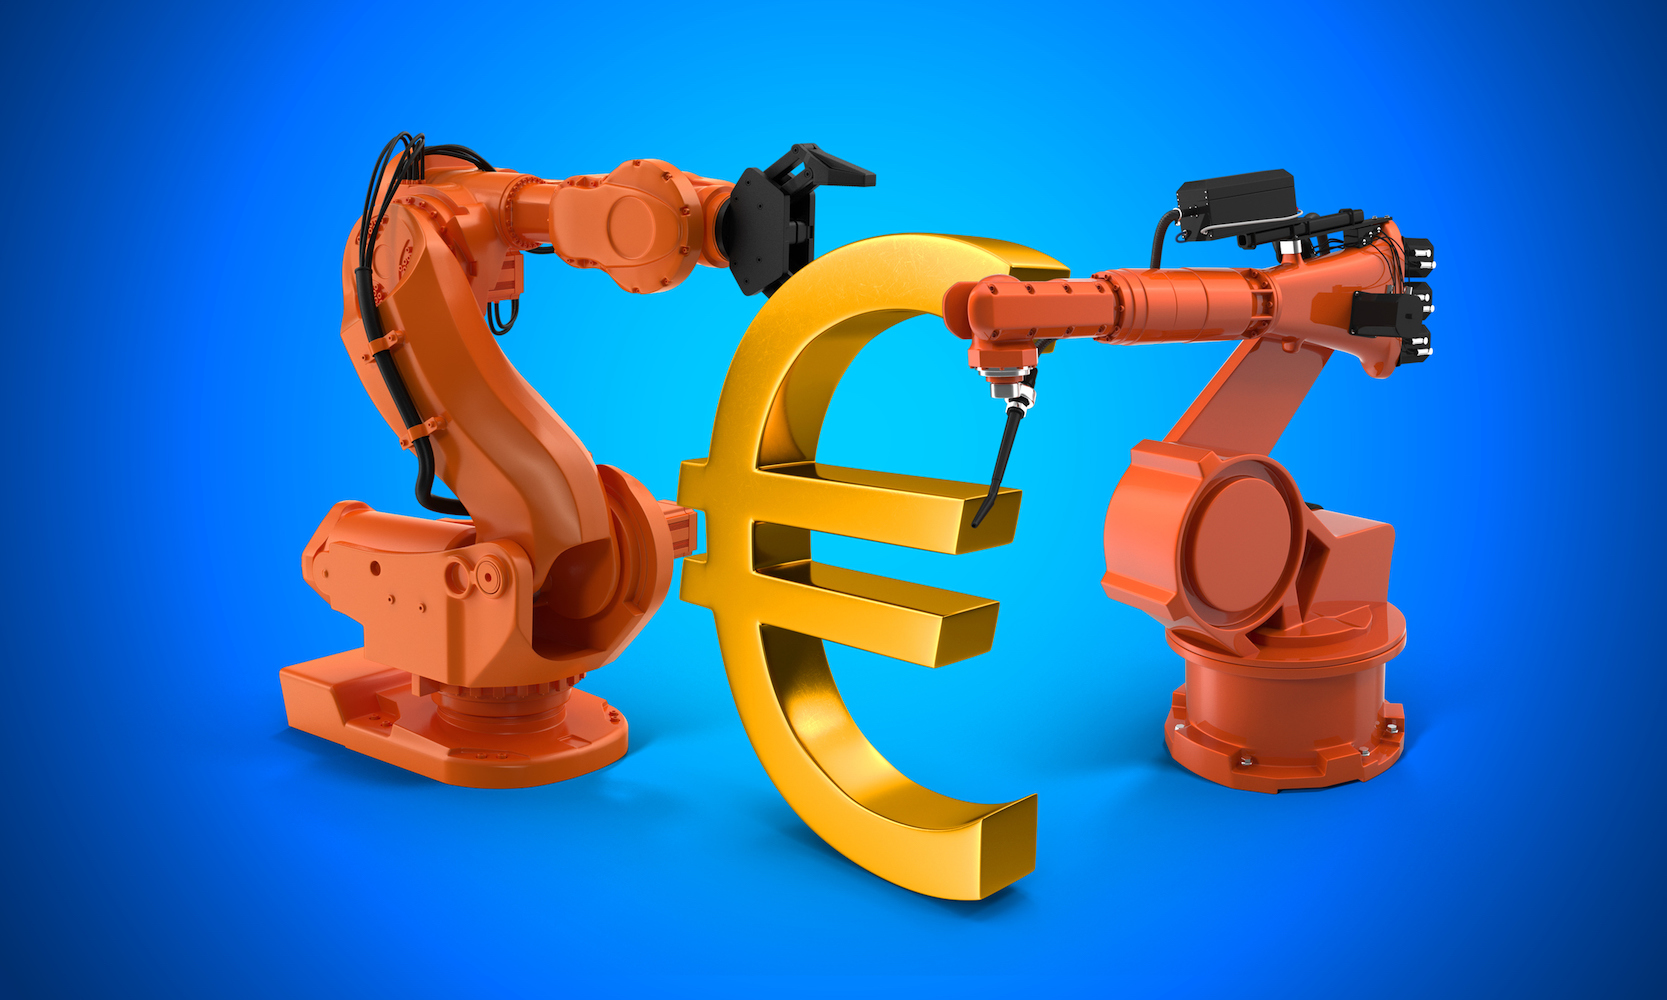 سه بعدی نشان یورو تولید دو بازوی رباتیک را به عنوان یک مفهوم انتزاعی در پس زمینه زرد ارائه کرد